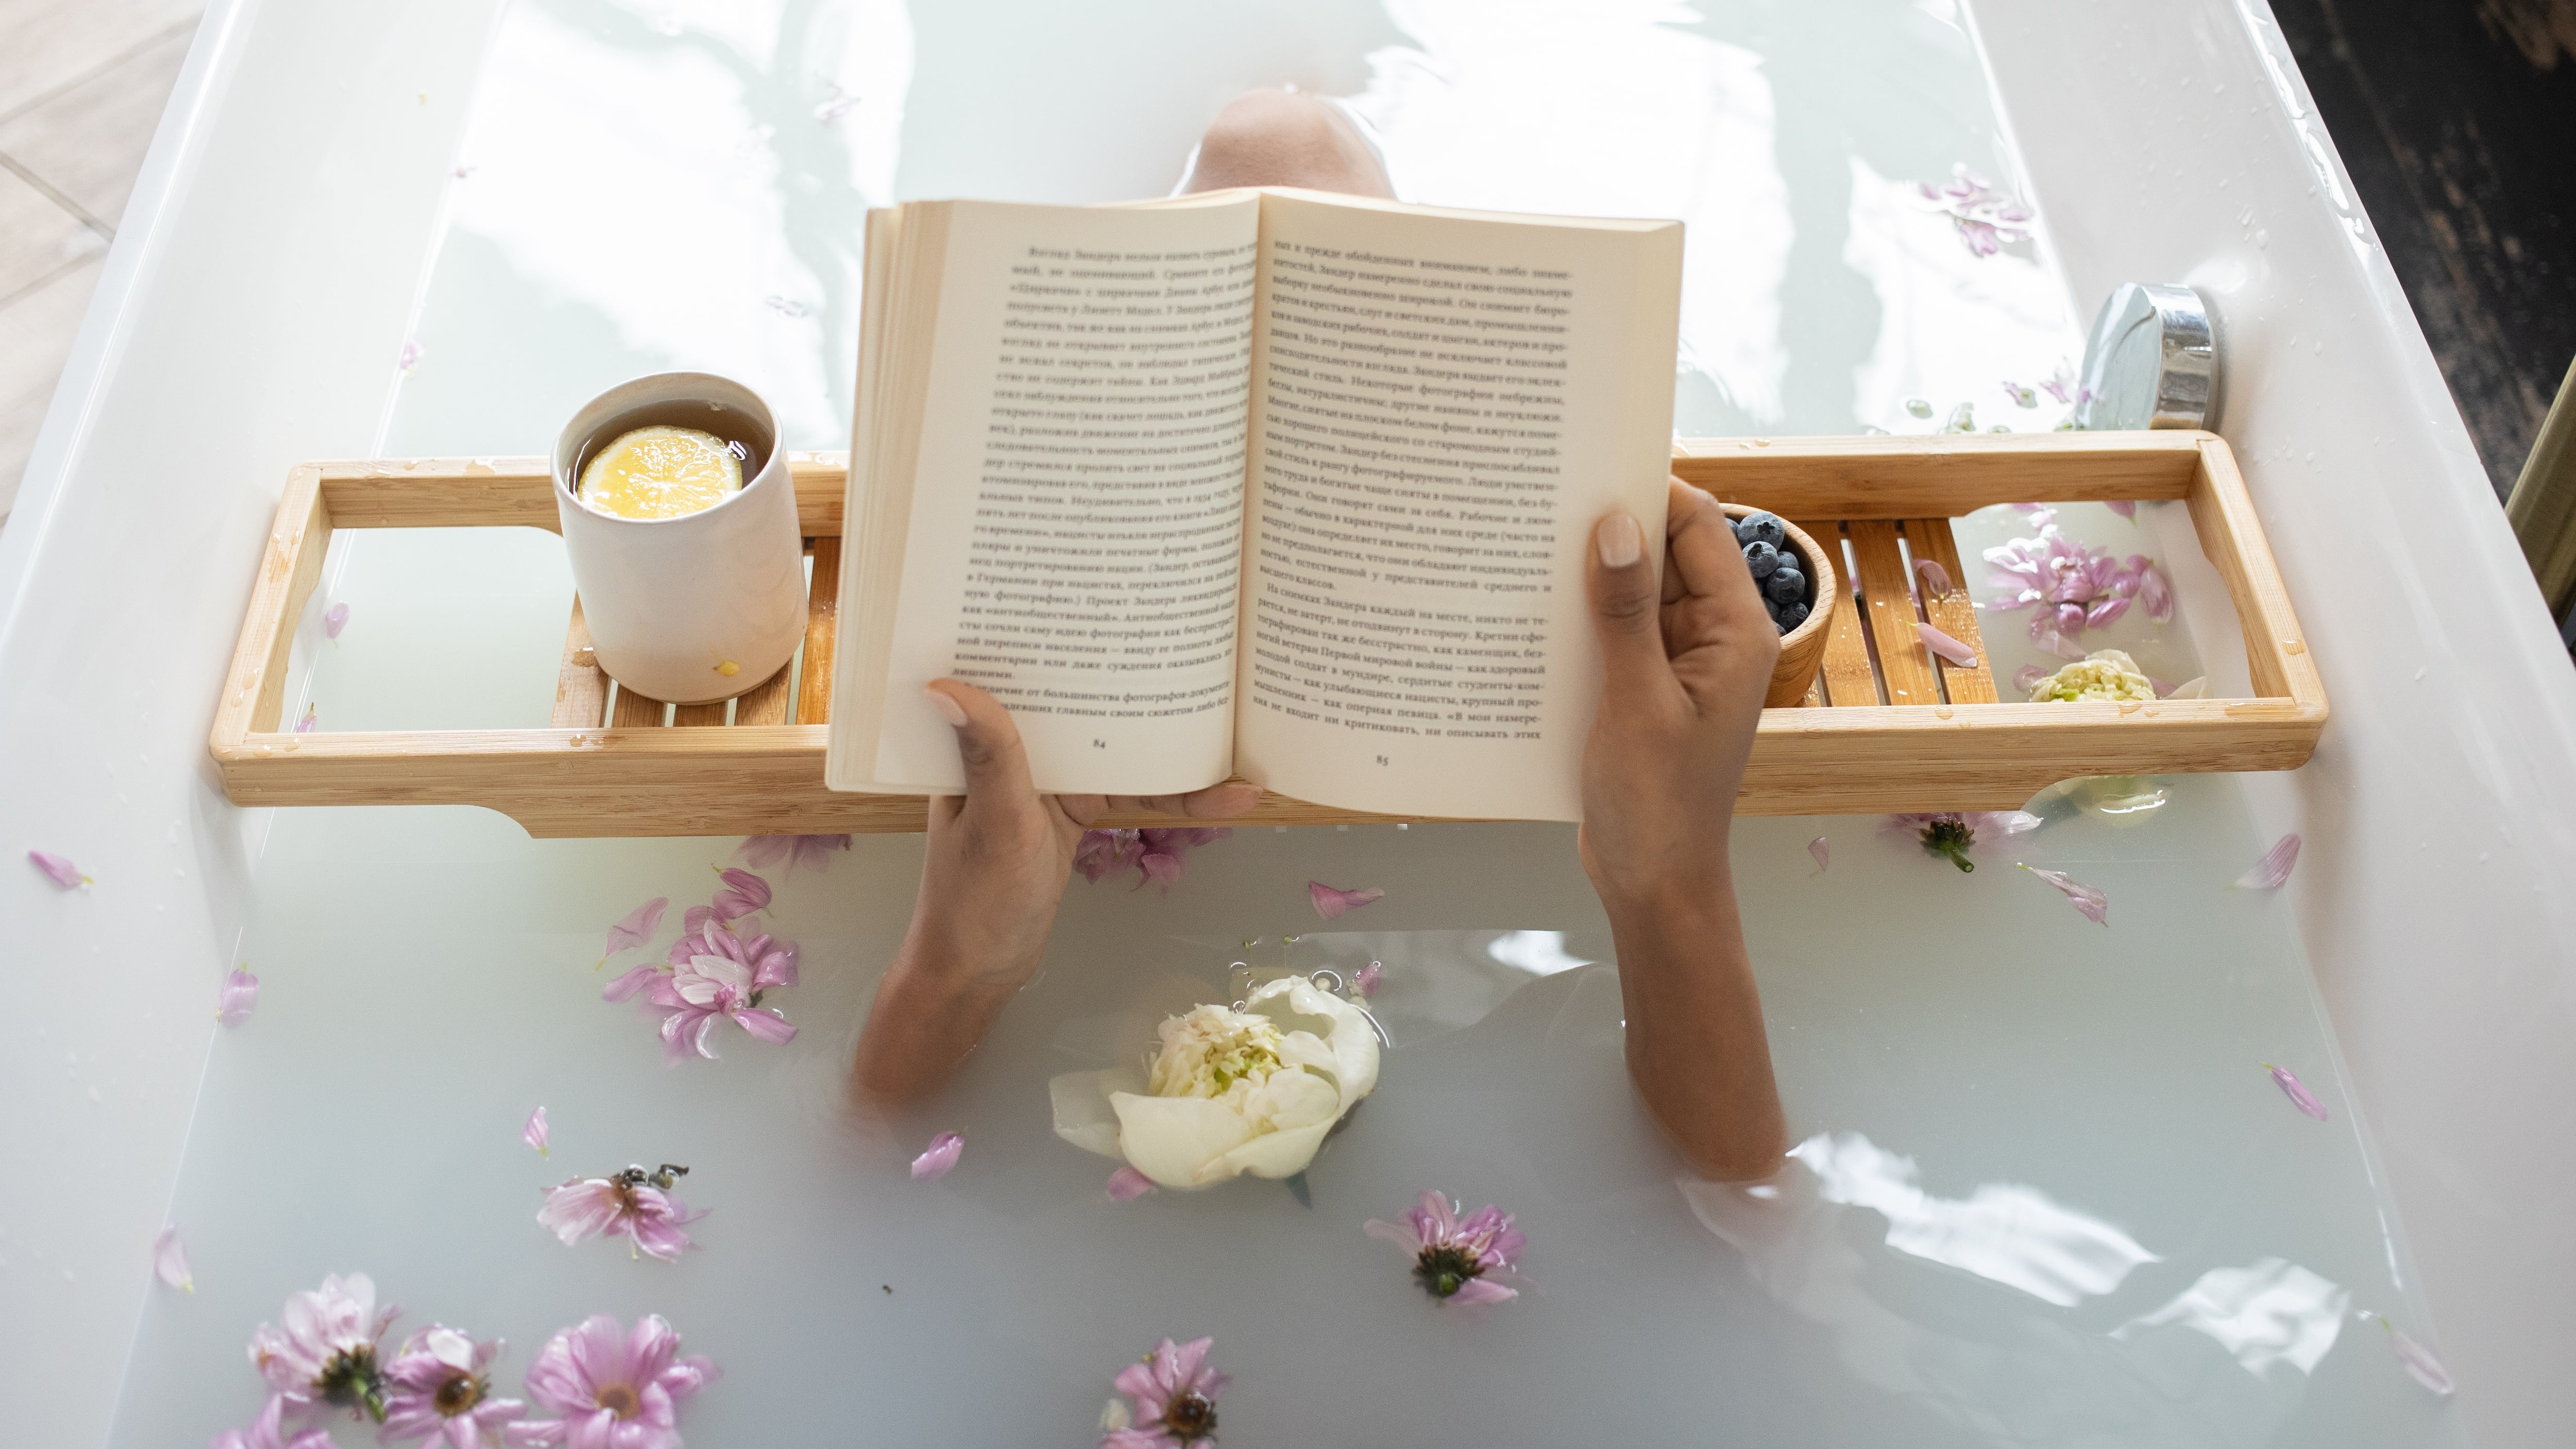 Mulher numa banheira com um livro e comida, referência a um spa caseiro